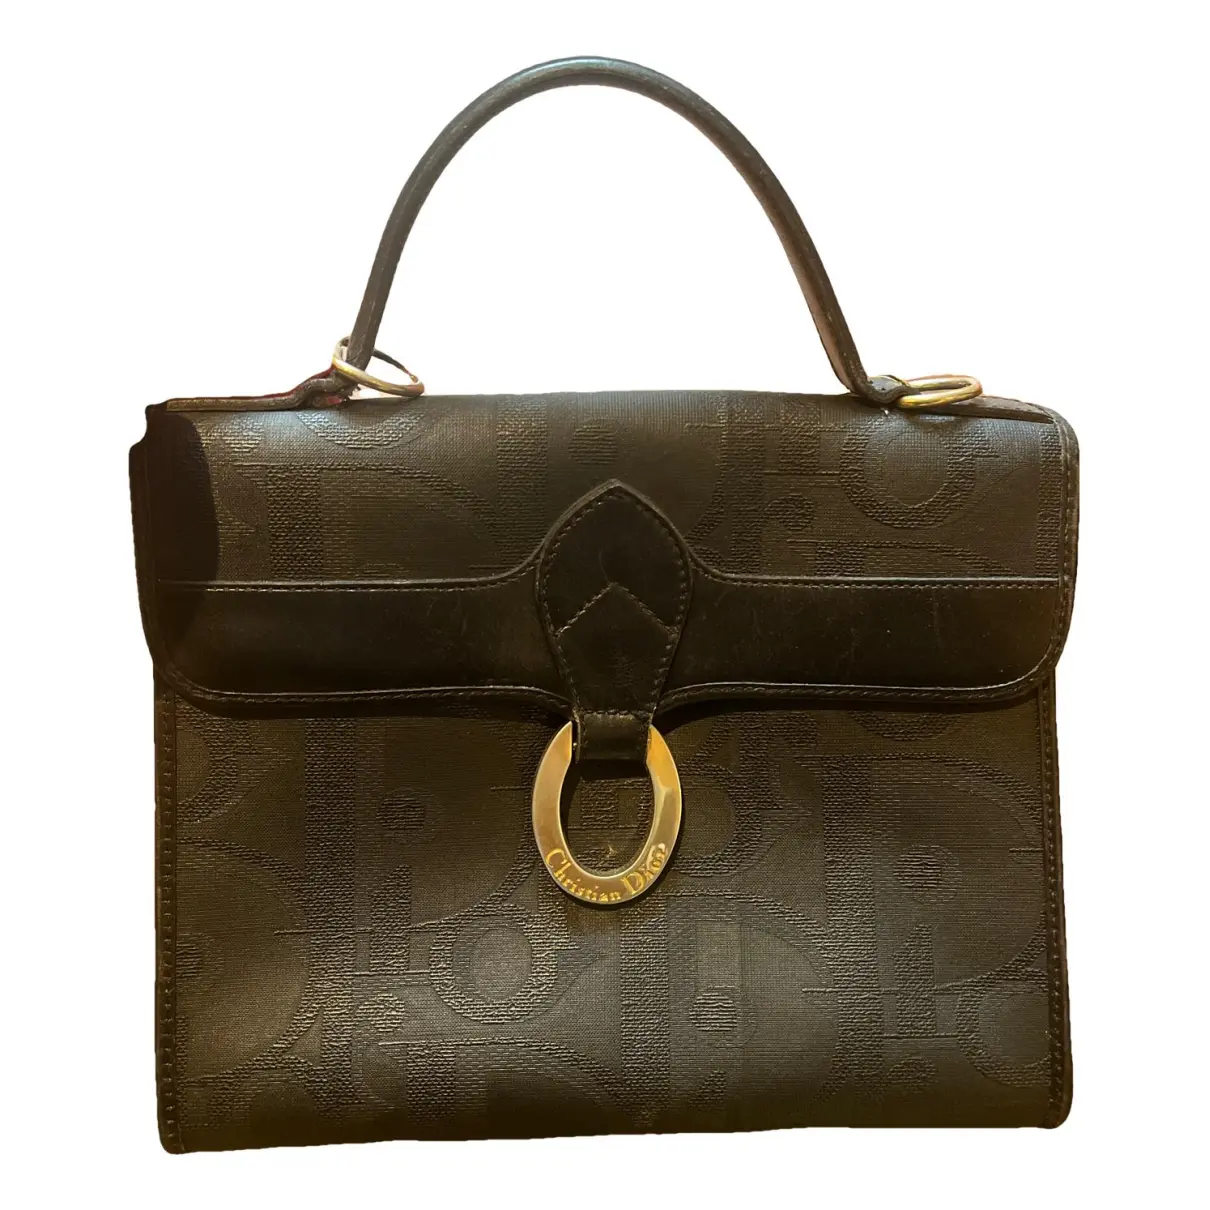 Diorever leather handbag